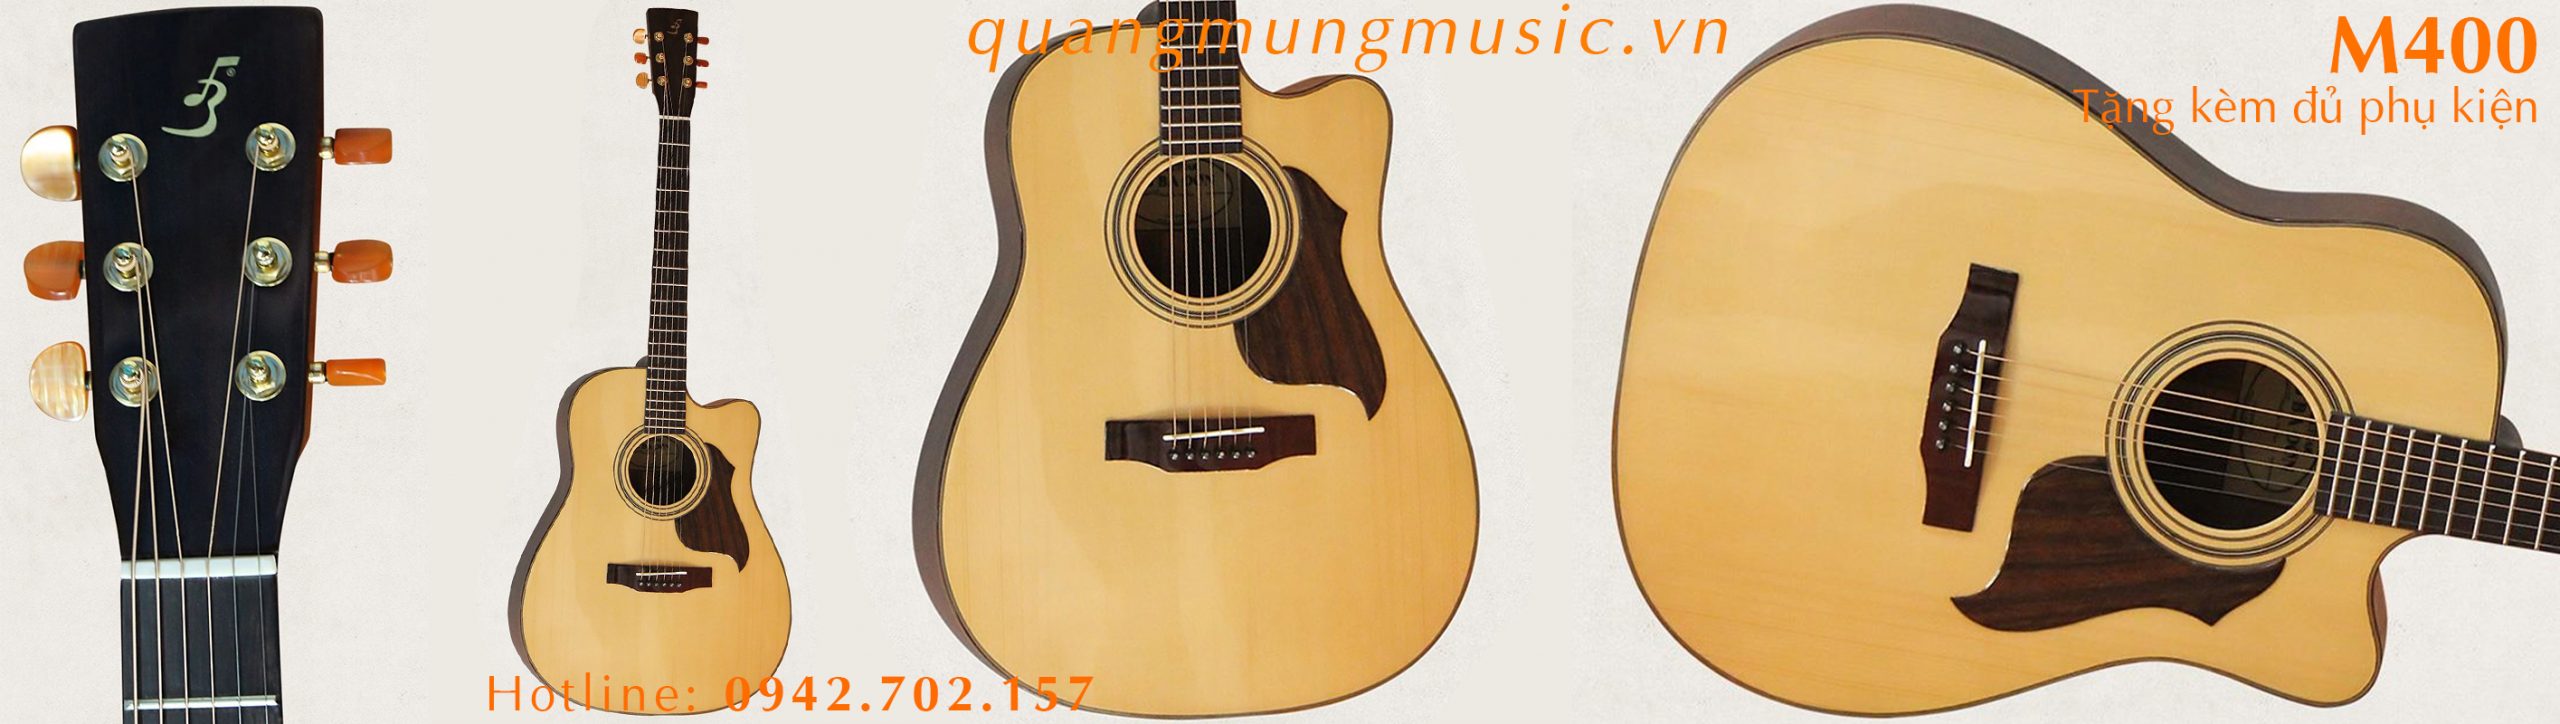 dan-guitar-Acoustic-Ba-don-M400